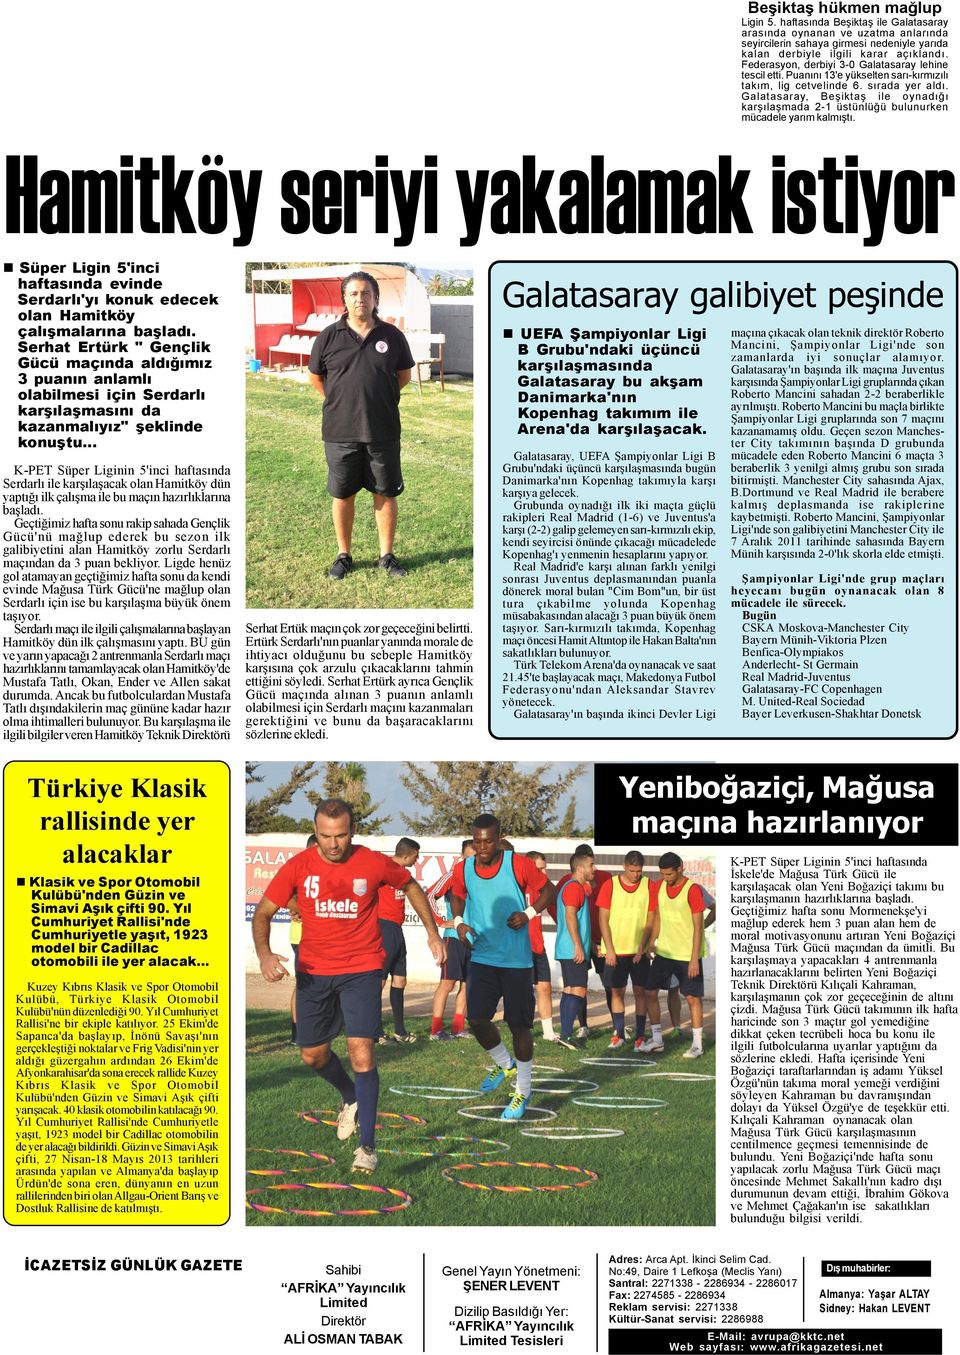 Galatasaray, Beþiktaþ ile oynadýðý karþýlaþmada 2-1 üstünlüðü bulunurken mücadele yarým kalmýþtý.